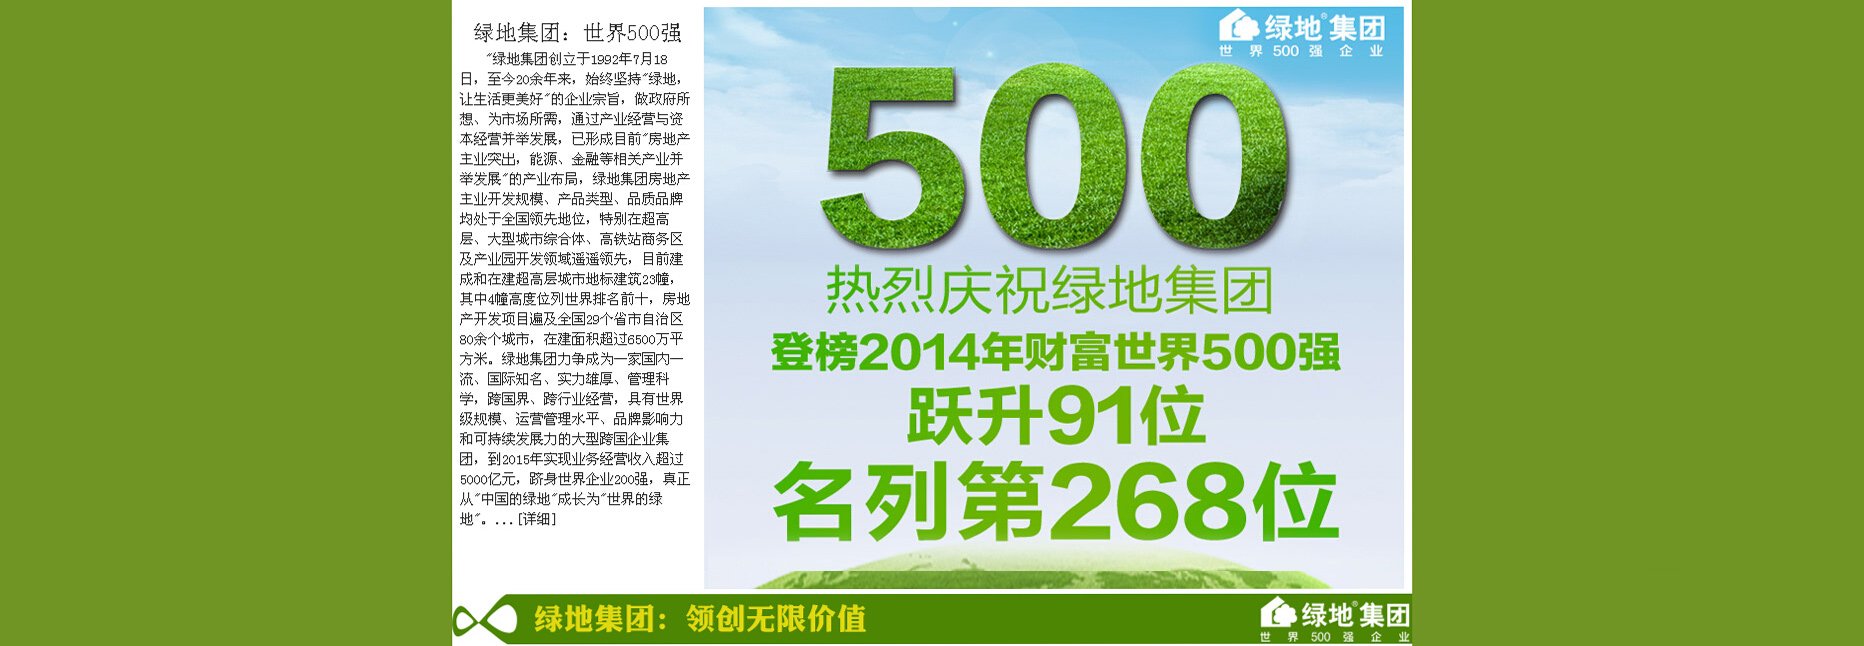 绿地集团世界500强最新排名-腾讯房产开封站